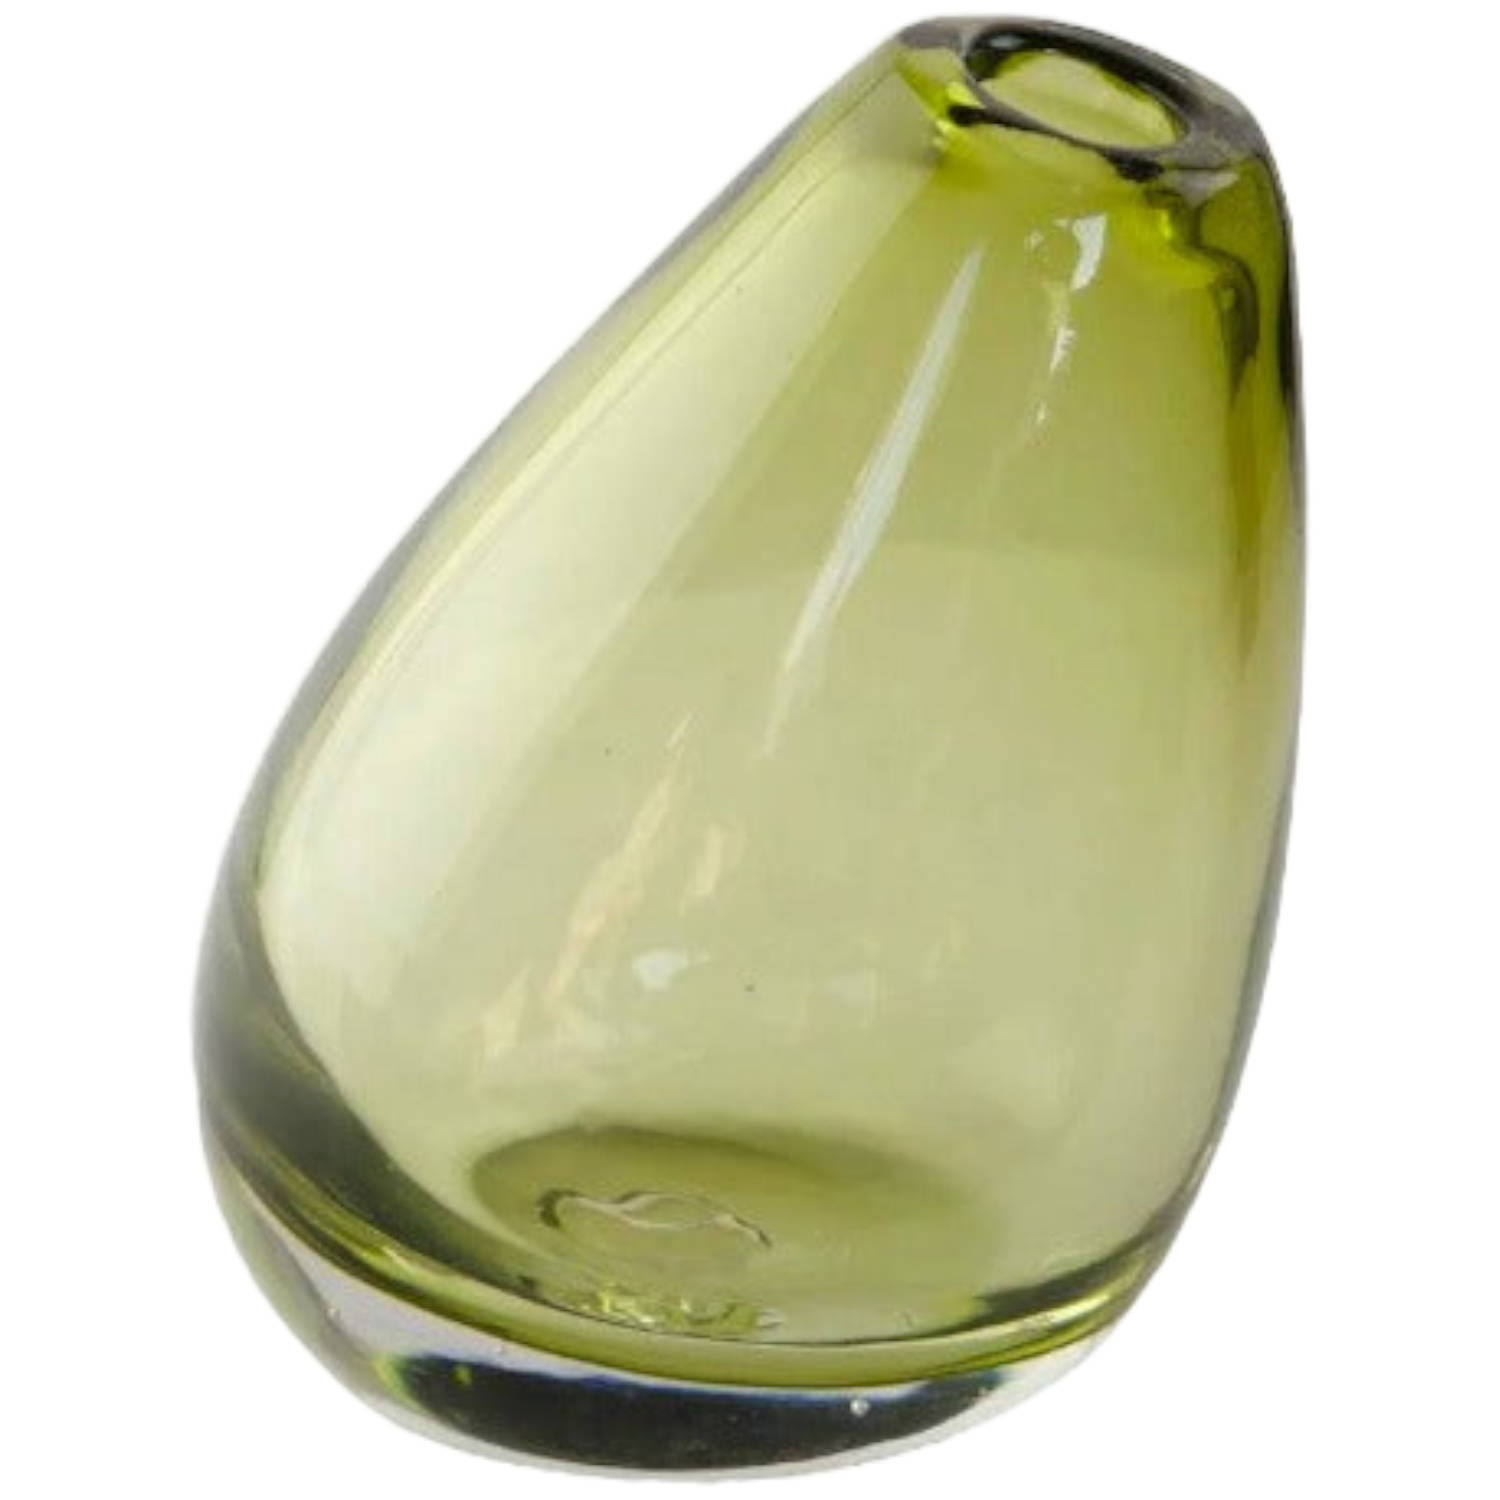 Home Delight - Vaas 'Yara' - Glas, 15.5cm hoog, groen